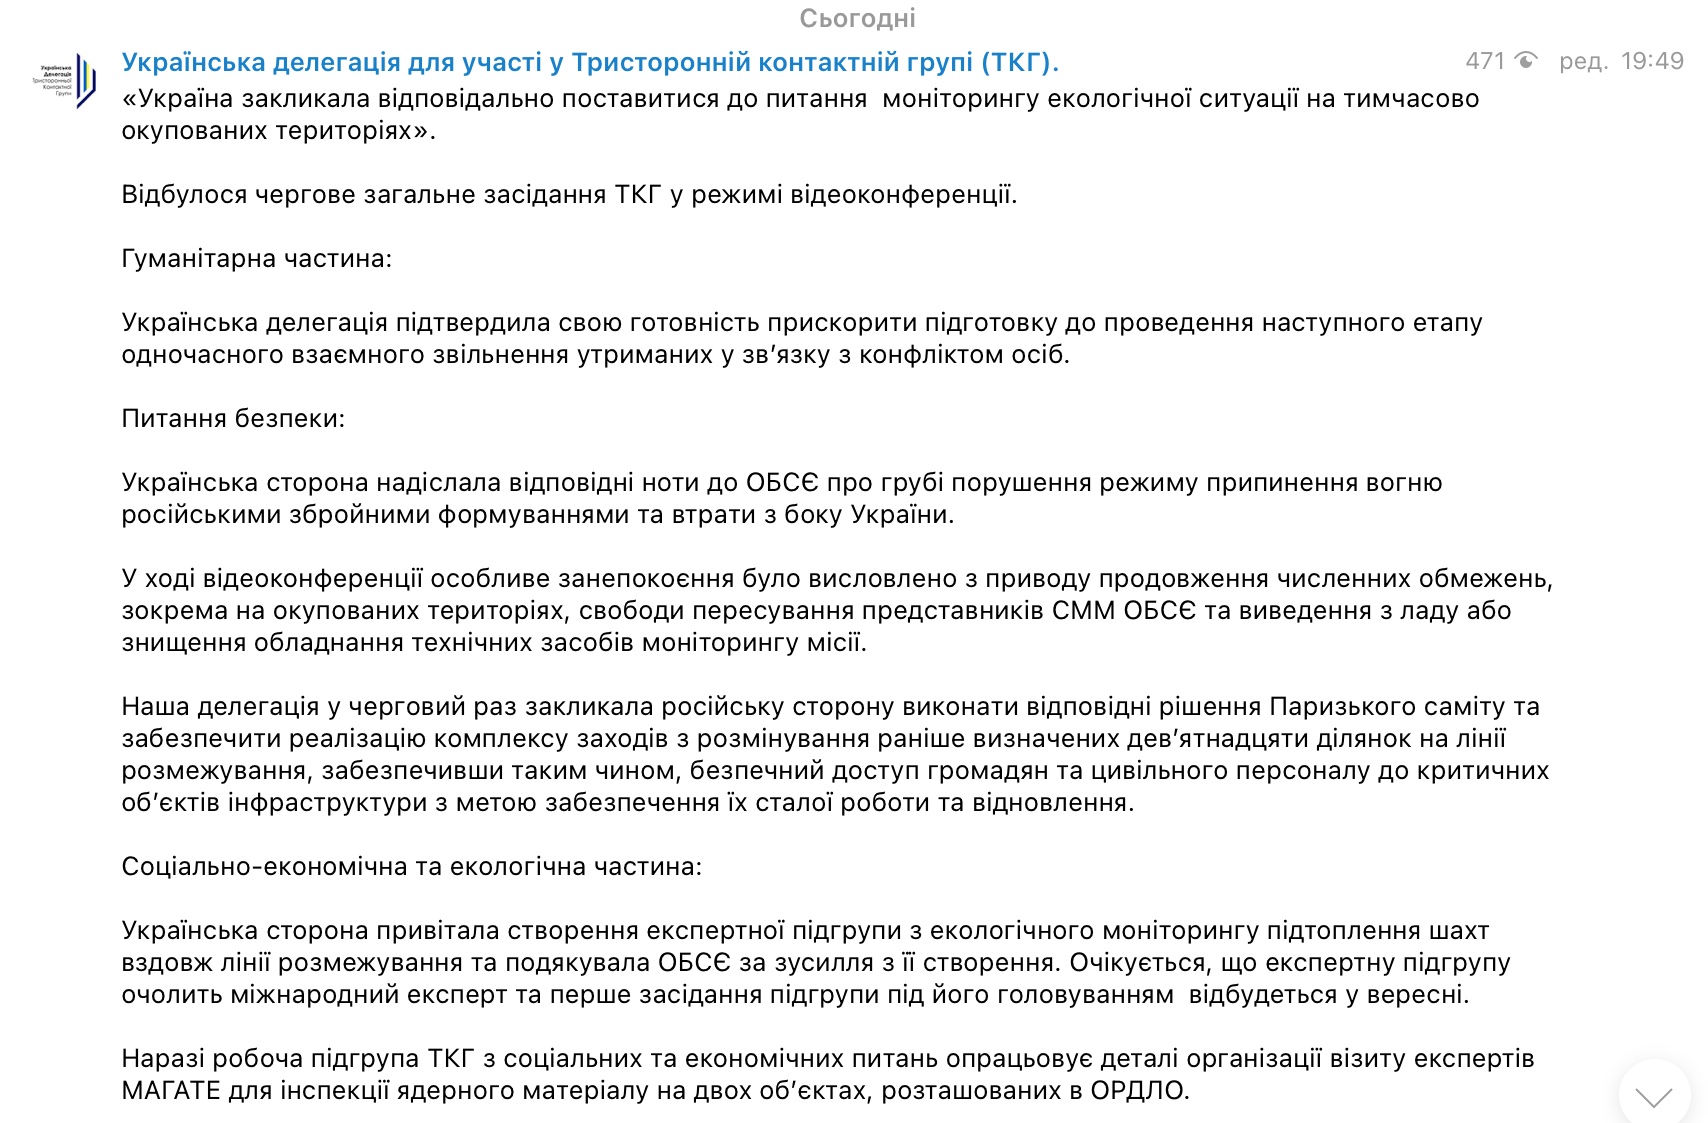 Ядерный материал на Донбассе. Началась подготовка визита экспертов МАГАТЭ